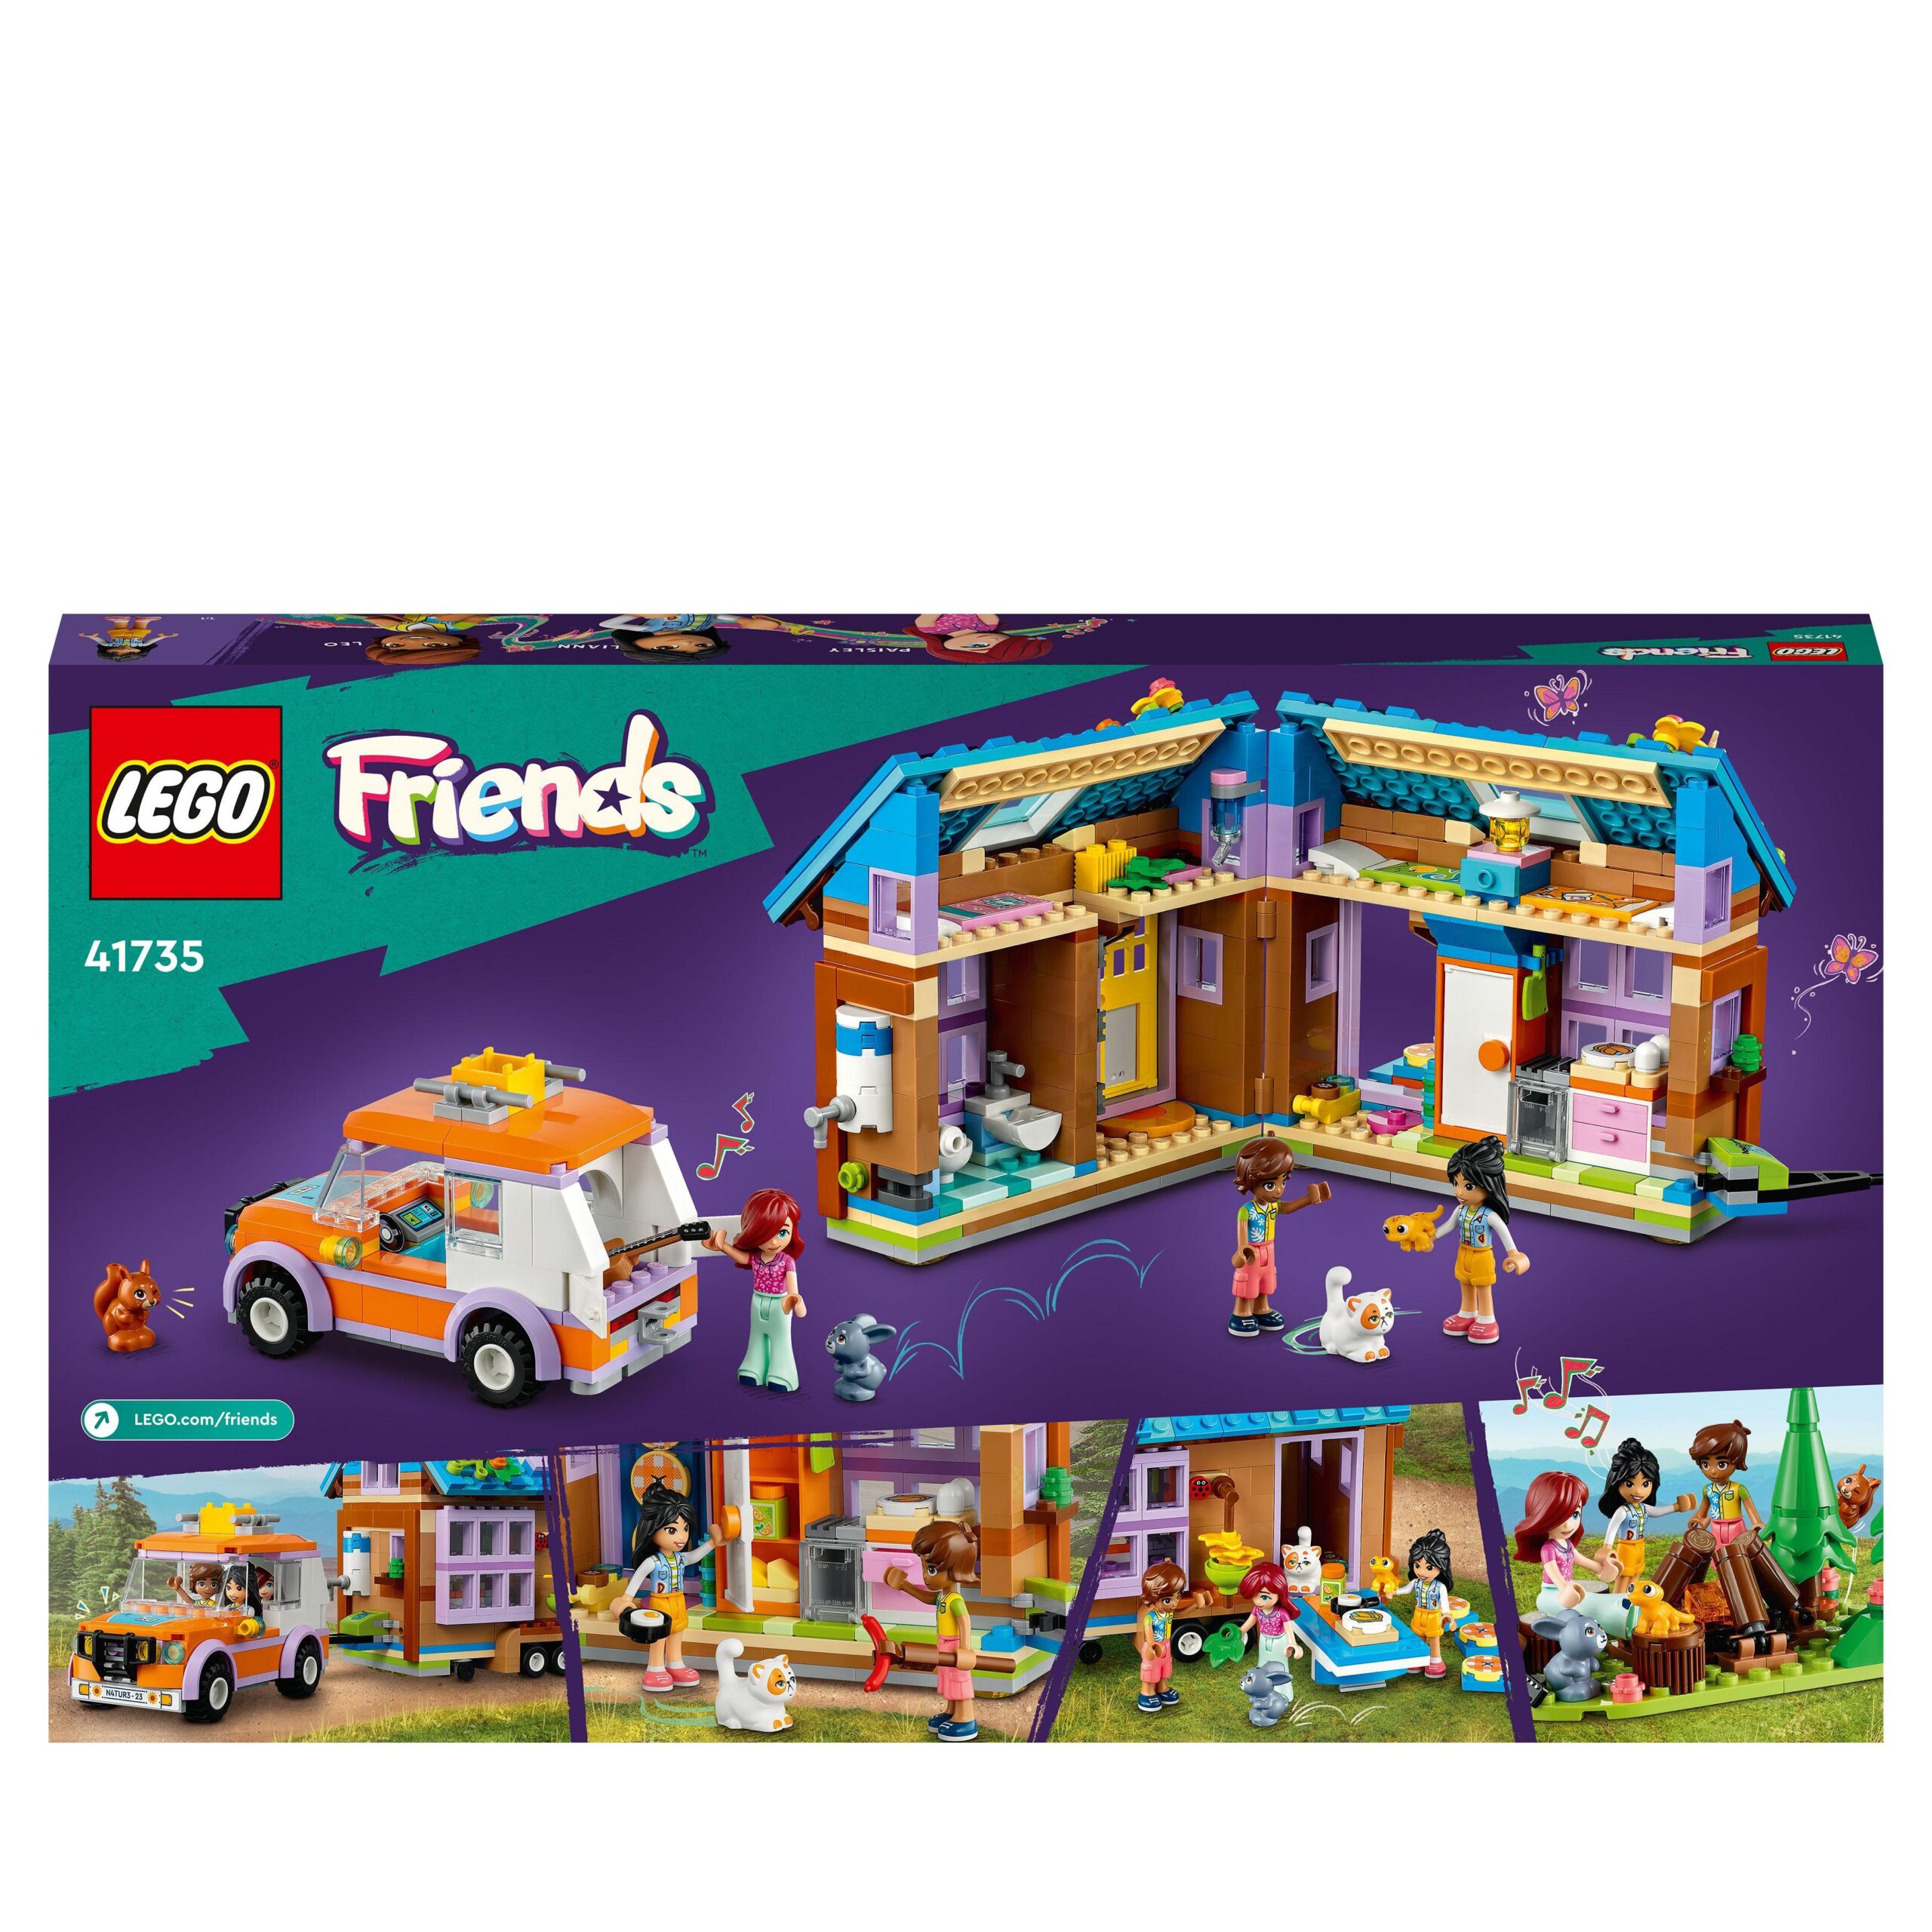 Lego friends 41735 casetta mobile, roulotte con macchina giocattolo, mini bamboline leo e liann, giochi per bambini, idea regalo - LEGO FRIENDS